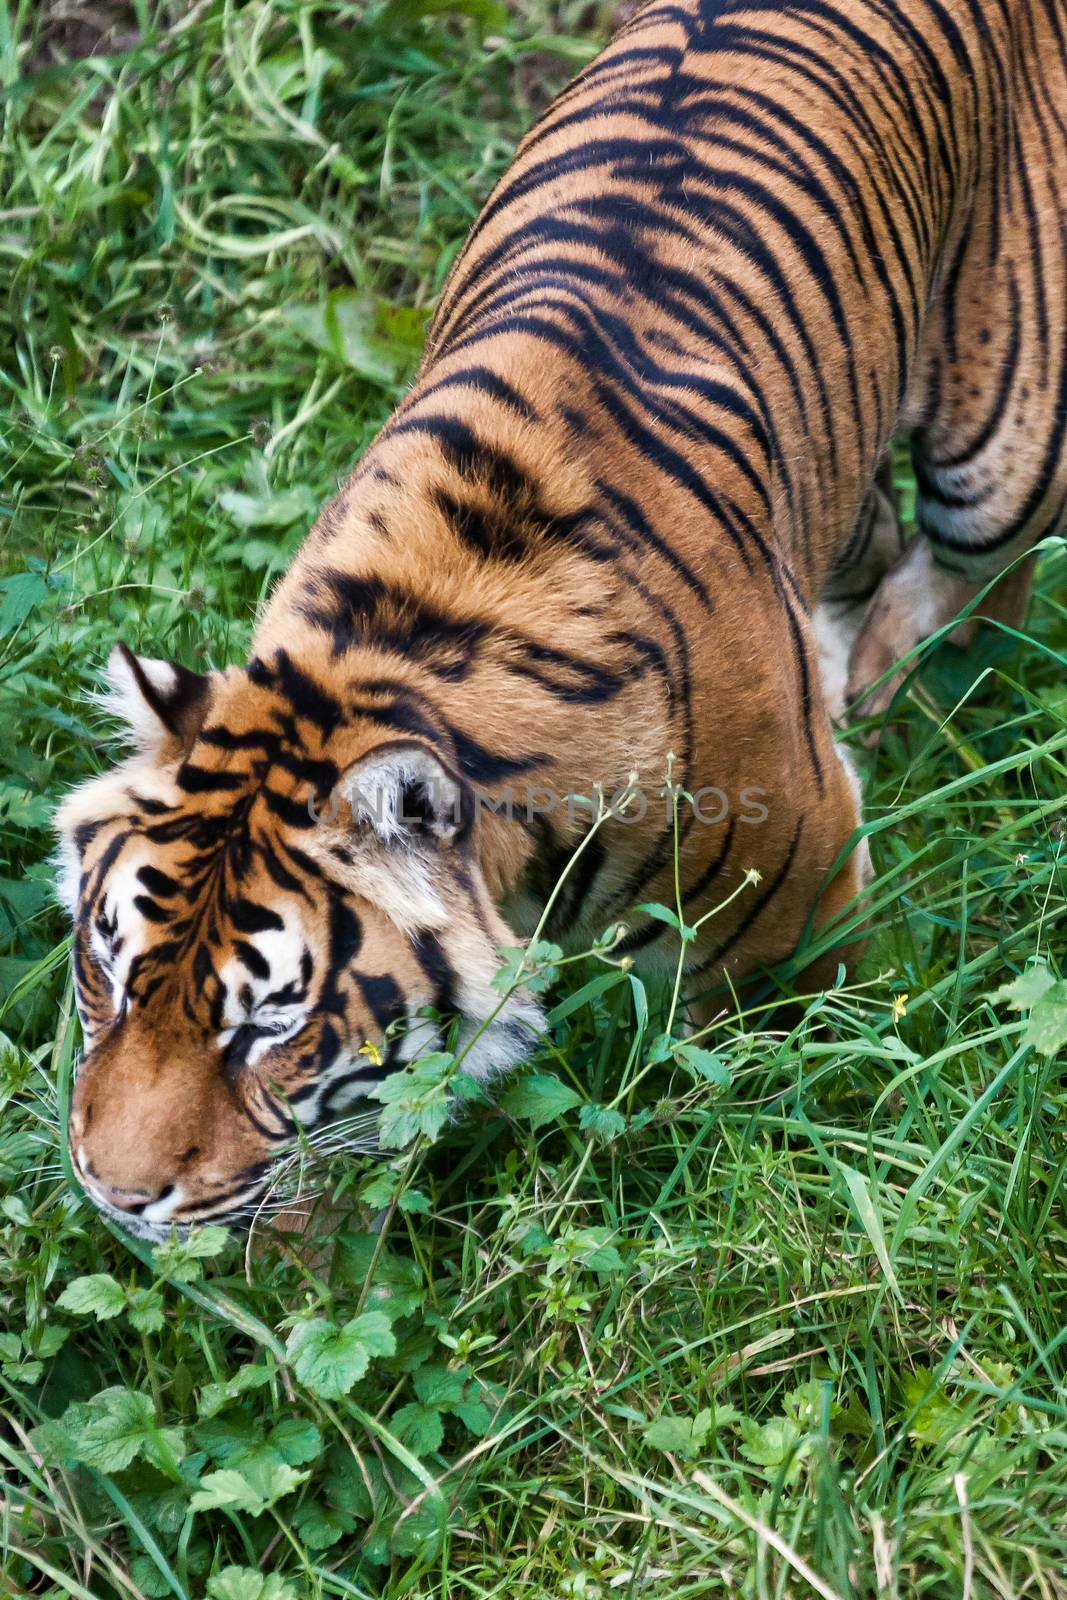 Sumatran Tiger (Panthera tigris sumatrae) by phil_bird